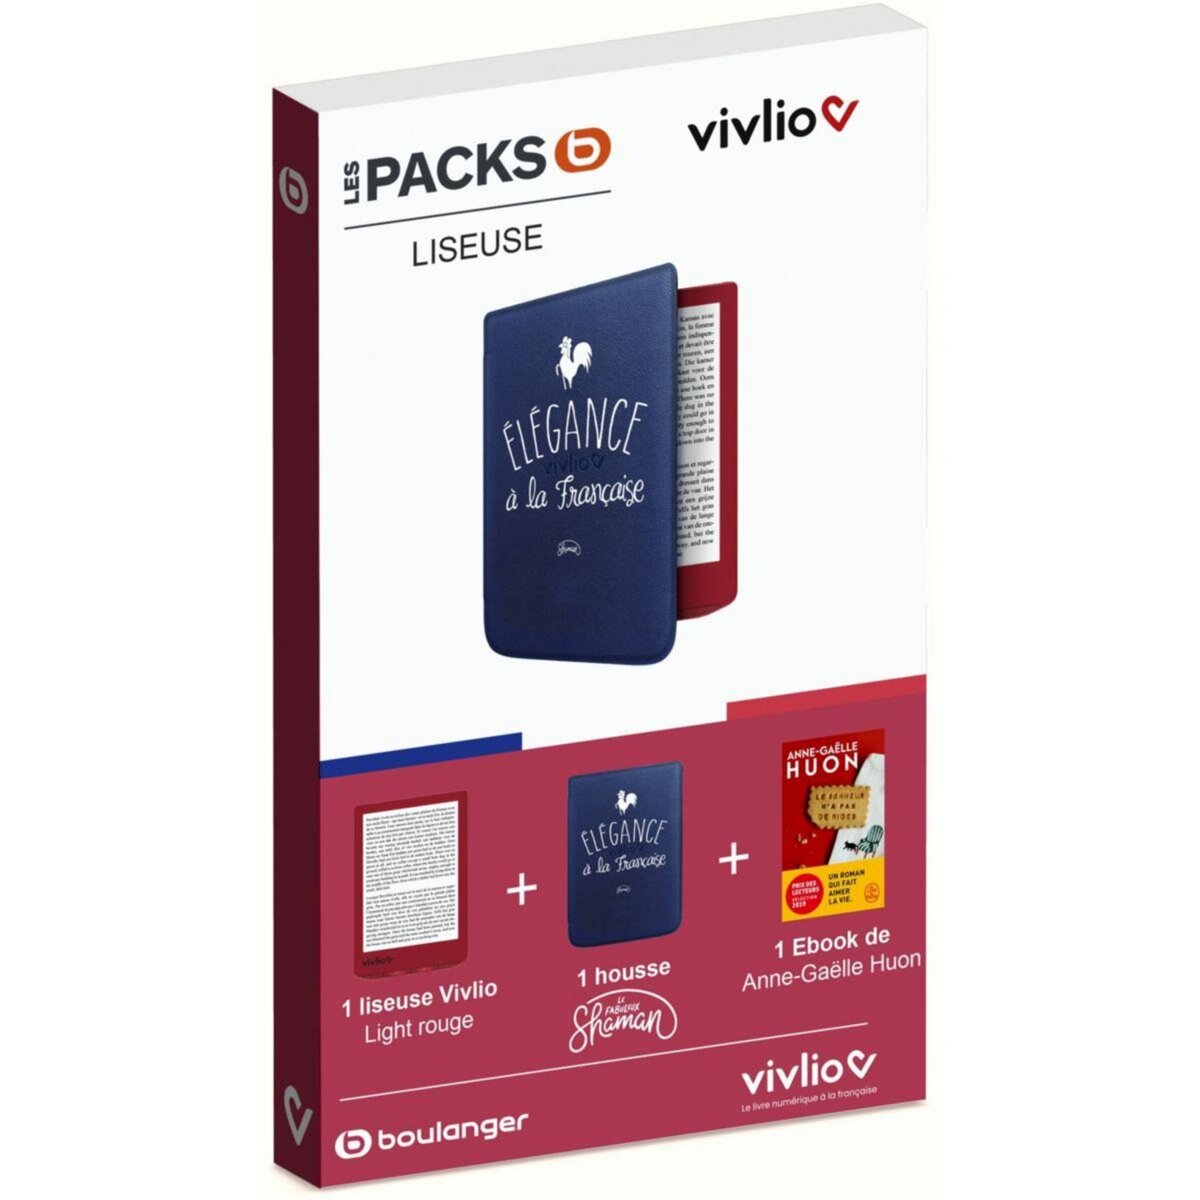 VIVLIO Liseuse eBook Liseuse Light - Coffret 3 en 1 Pack B pas cher 